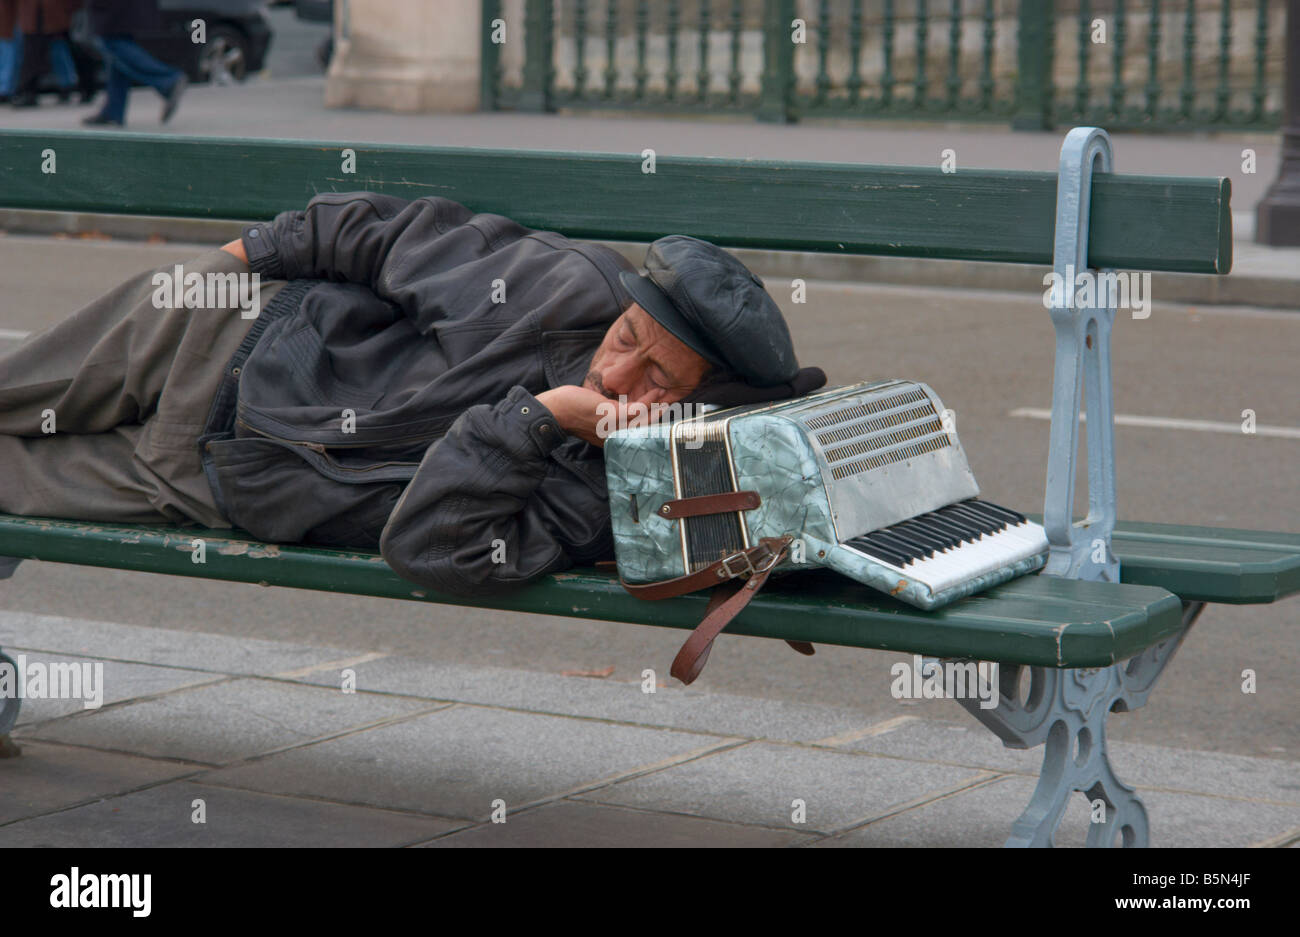 Musicien ambulant de dormir sur un banc, la tête reposée sur son accordéon Paris France Banque D'Images